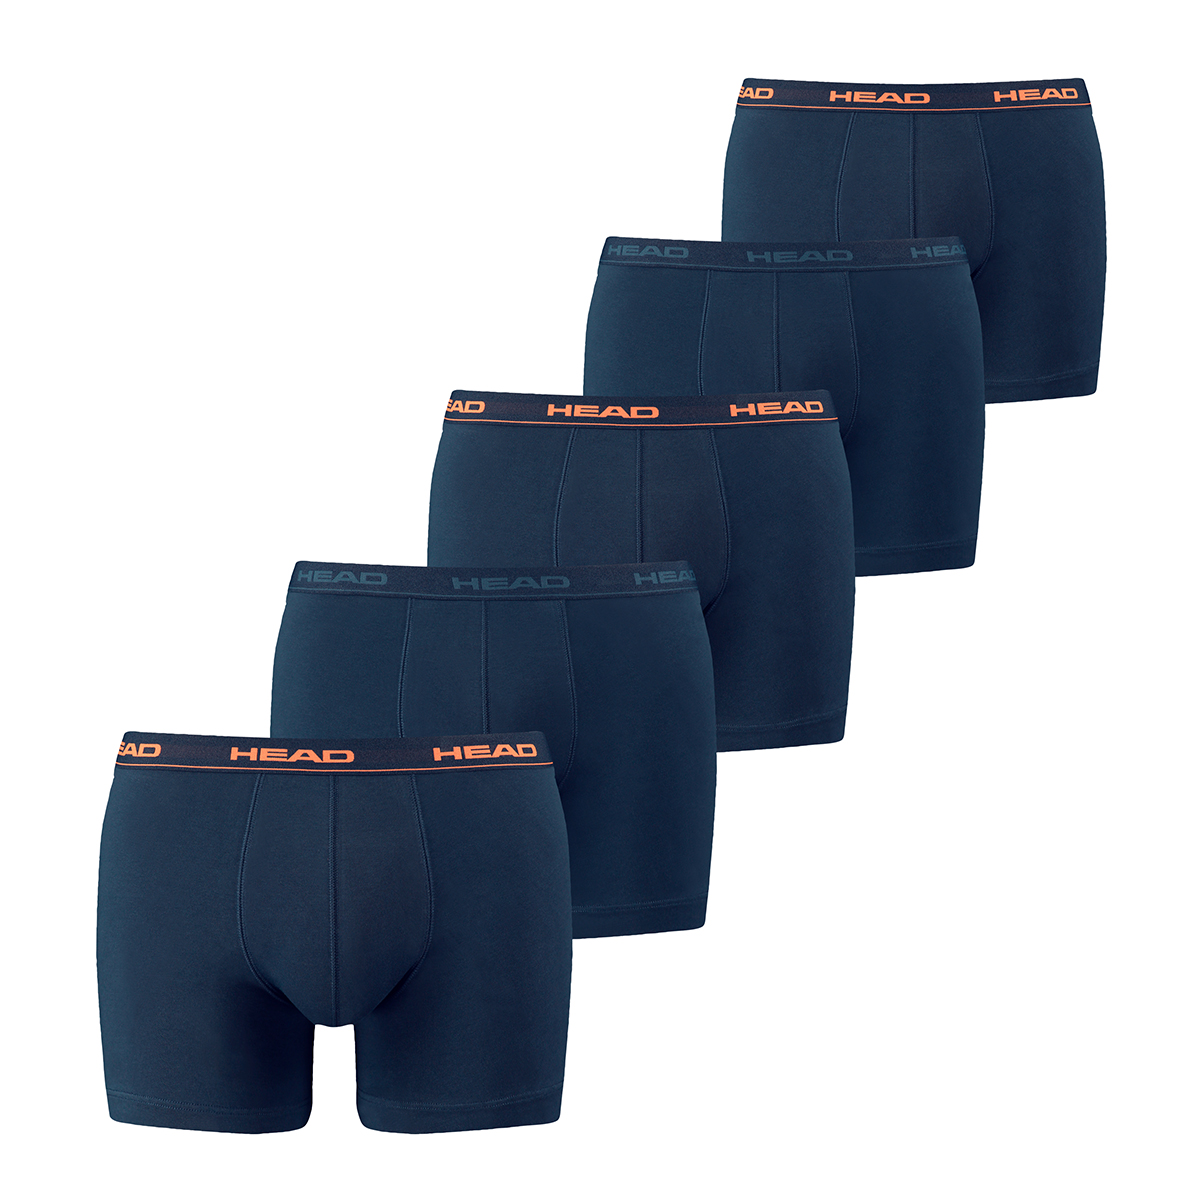 HEAD Mens Men’s Basic Boxers (5 Pack) Boxer Shorts, Peacoat/orange, M (5er Pack)